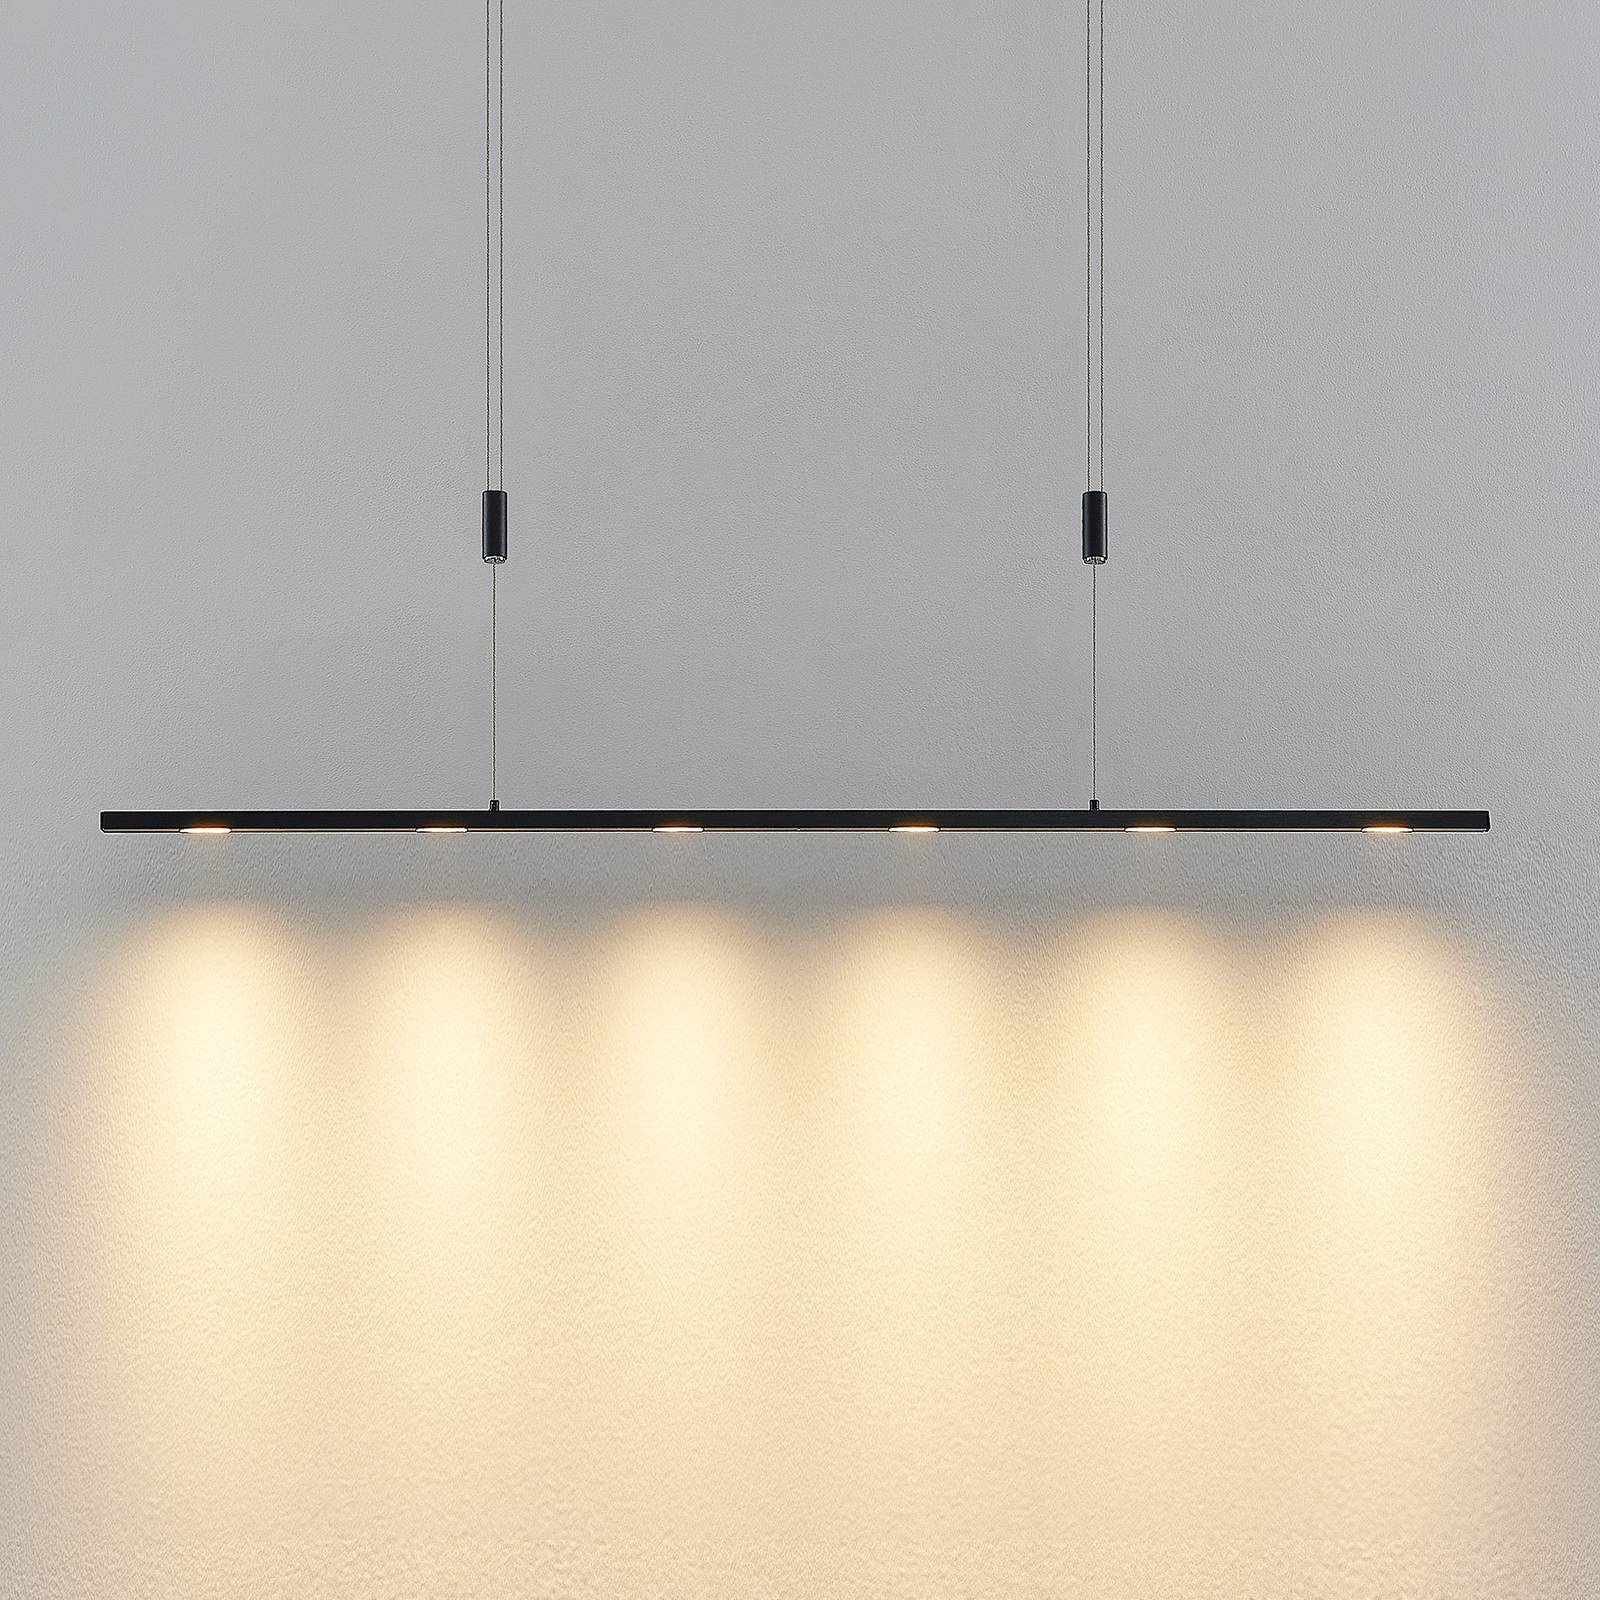 Lucande Lucande Stakato LED stropní světlo 6 zdrojů 120 cm